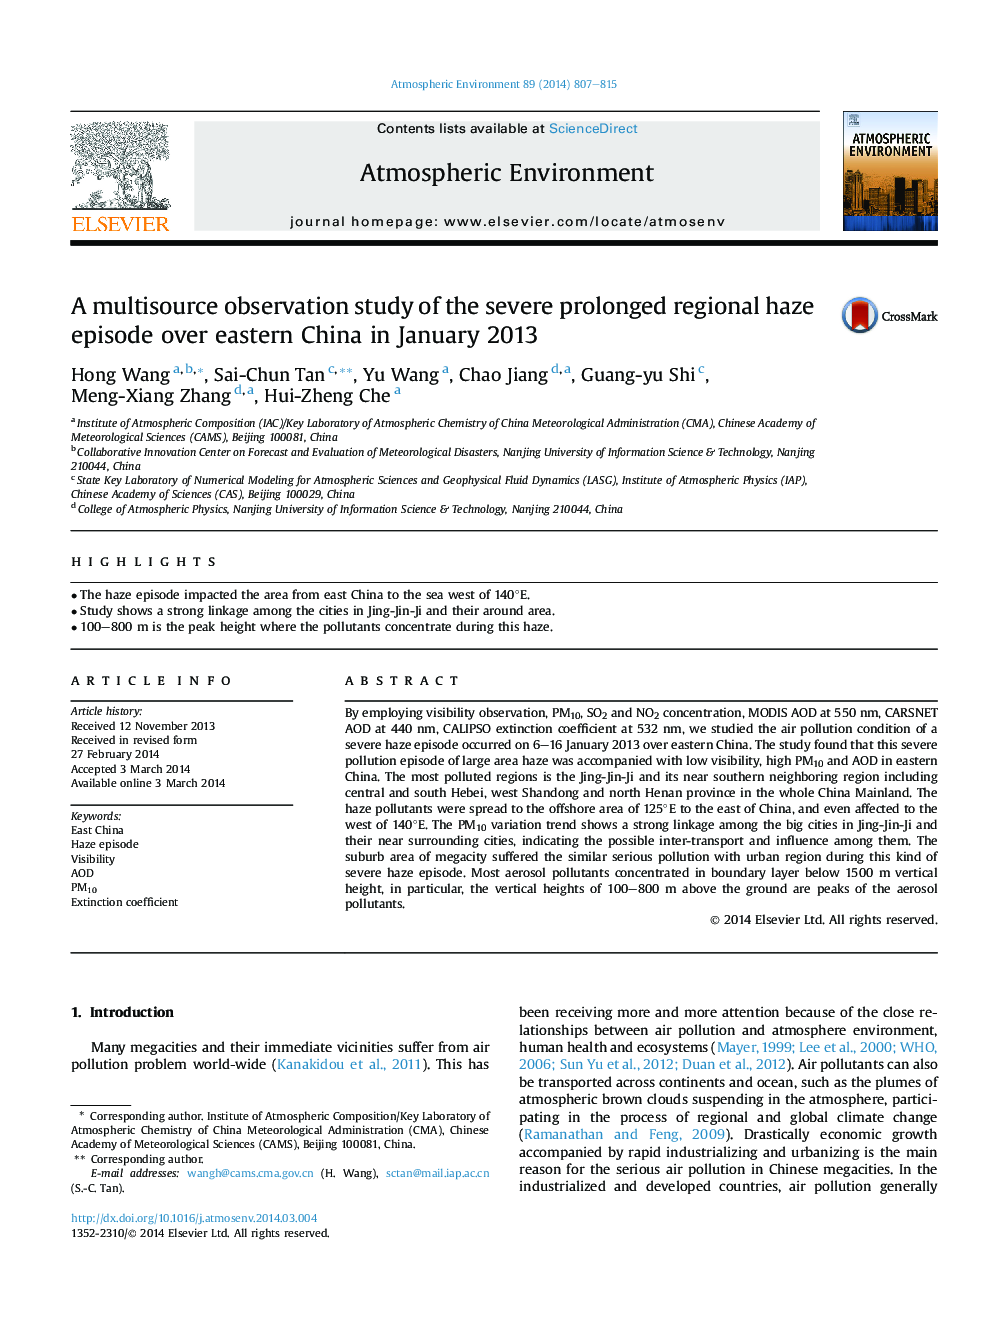 مطالعه ی چندرسانه ای در طول ماه ژانویه 2013 در منطقه خیز منطقه ای شدید در شرق چین 